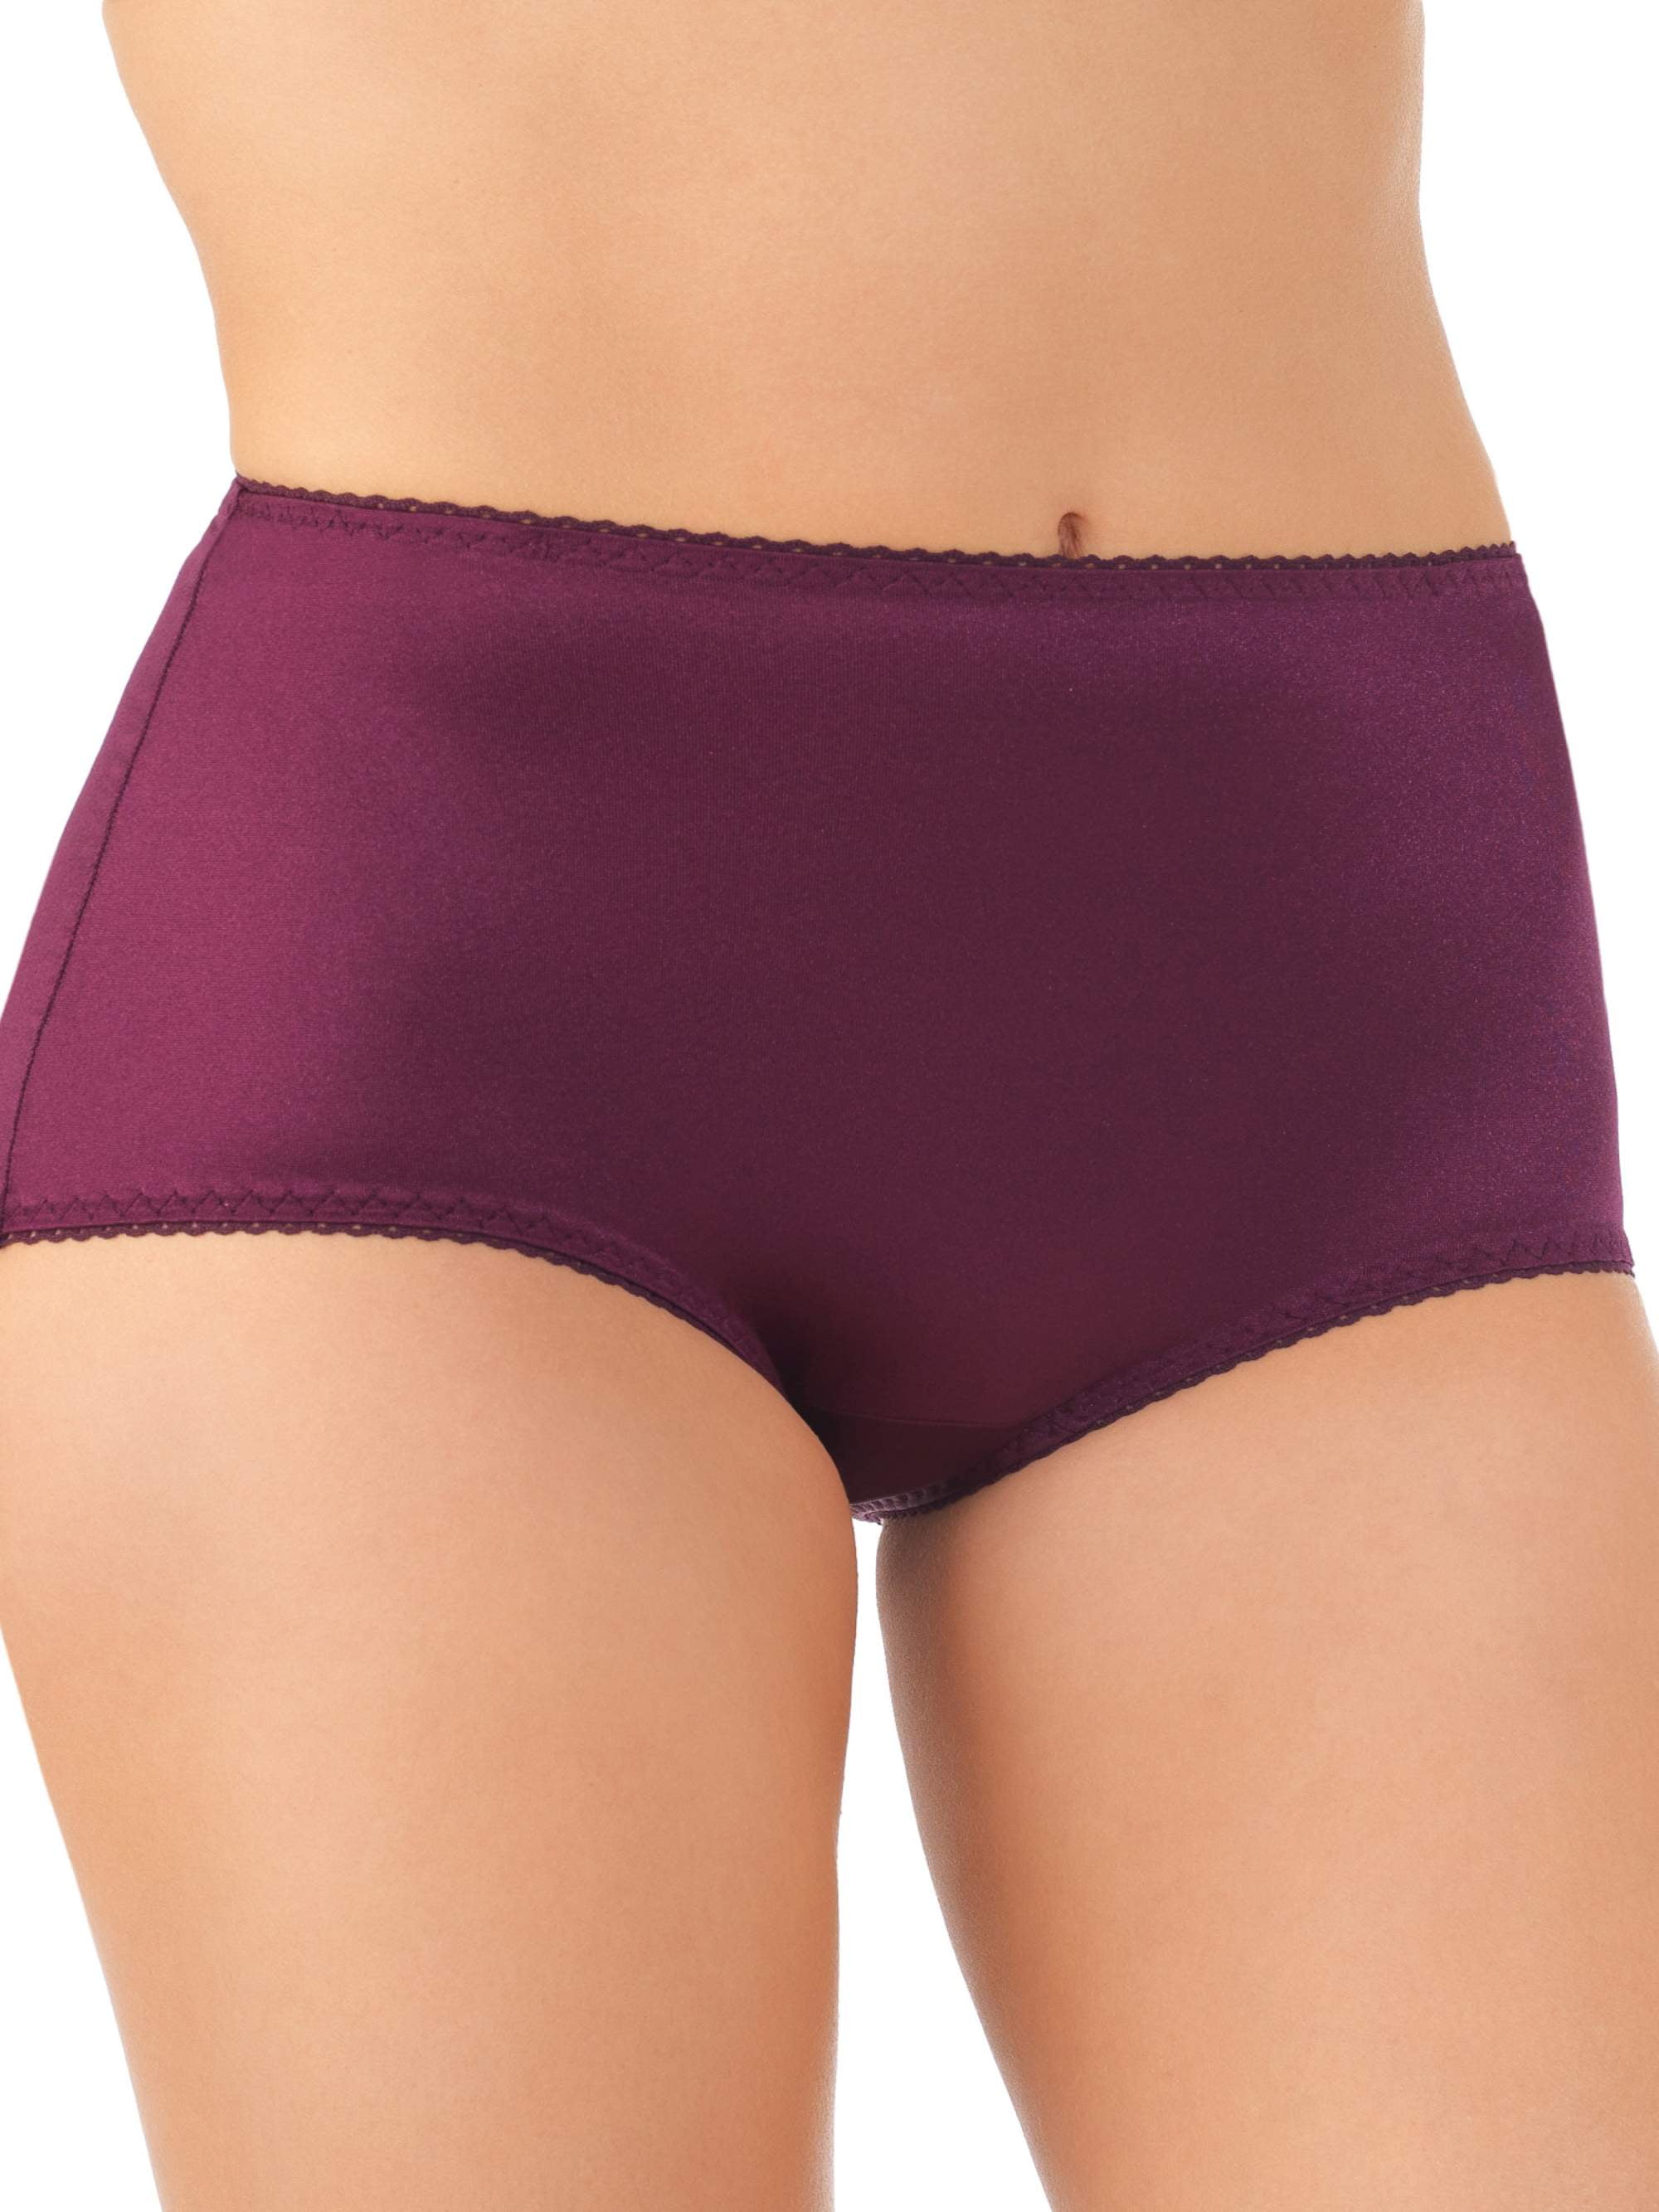 Vassarette Women's Undershapers Light Control Hicut Panties on